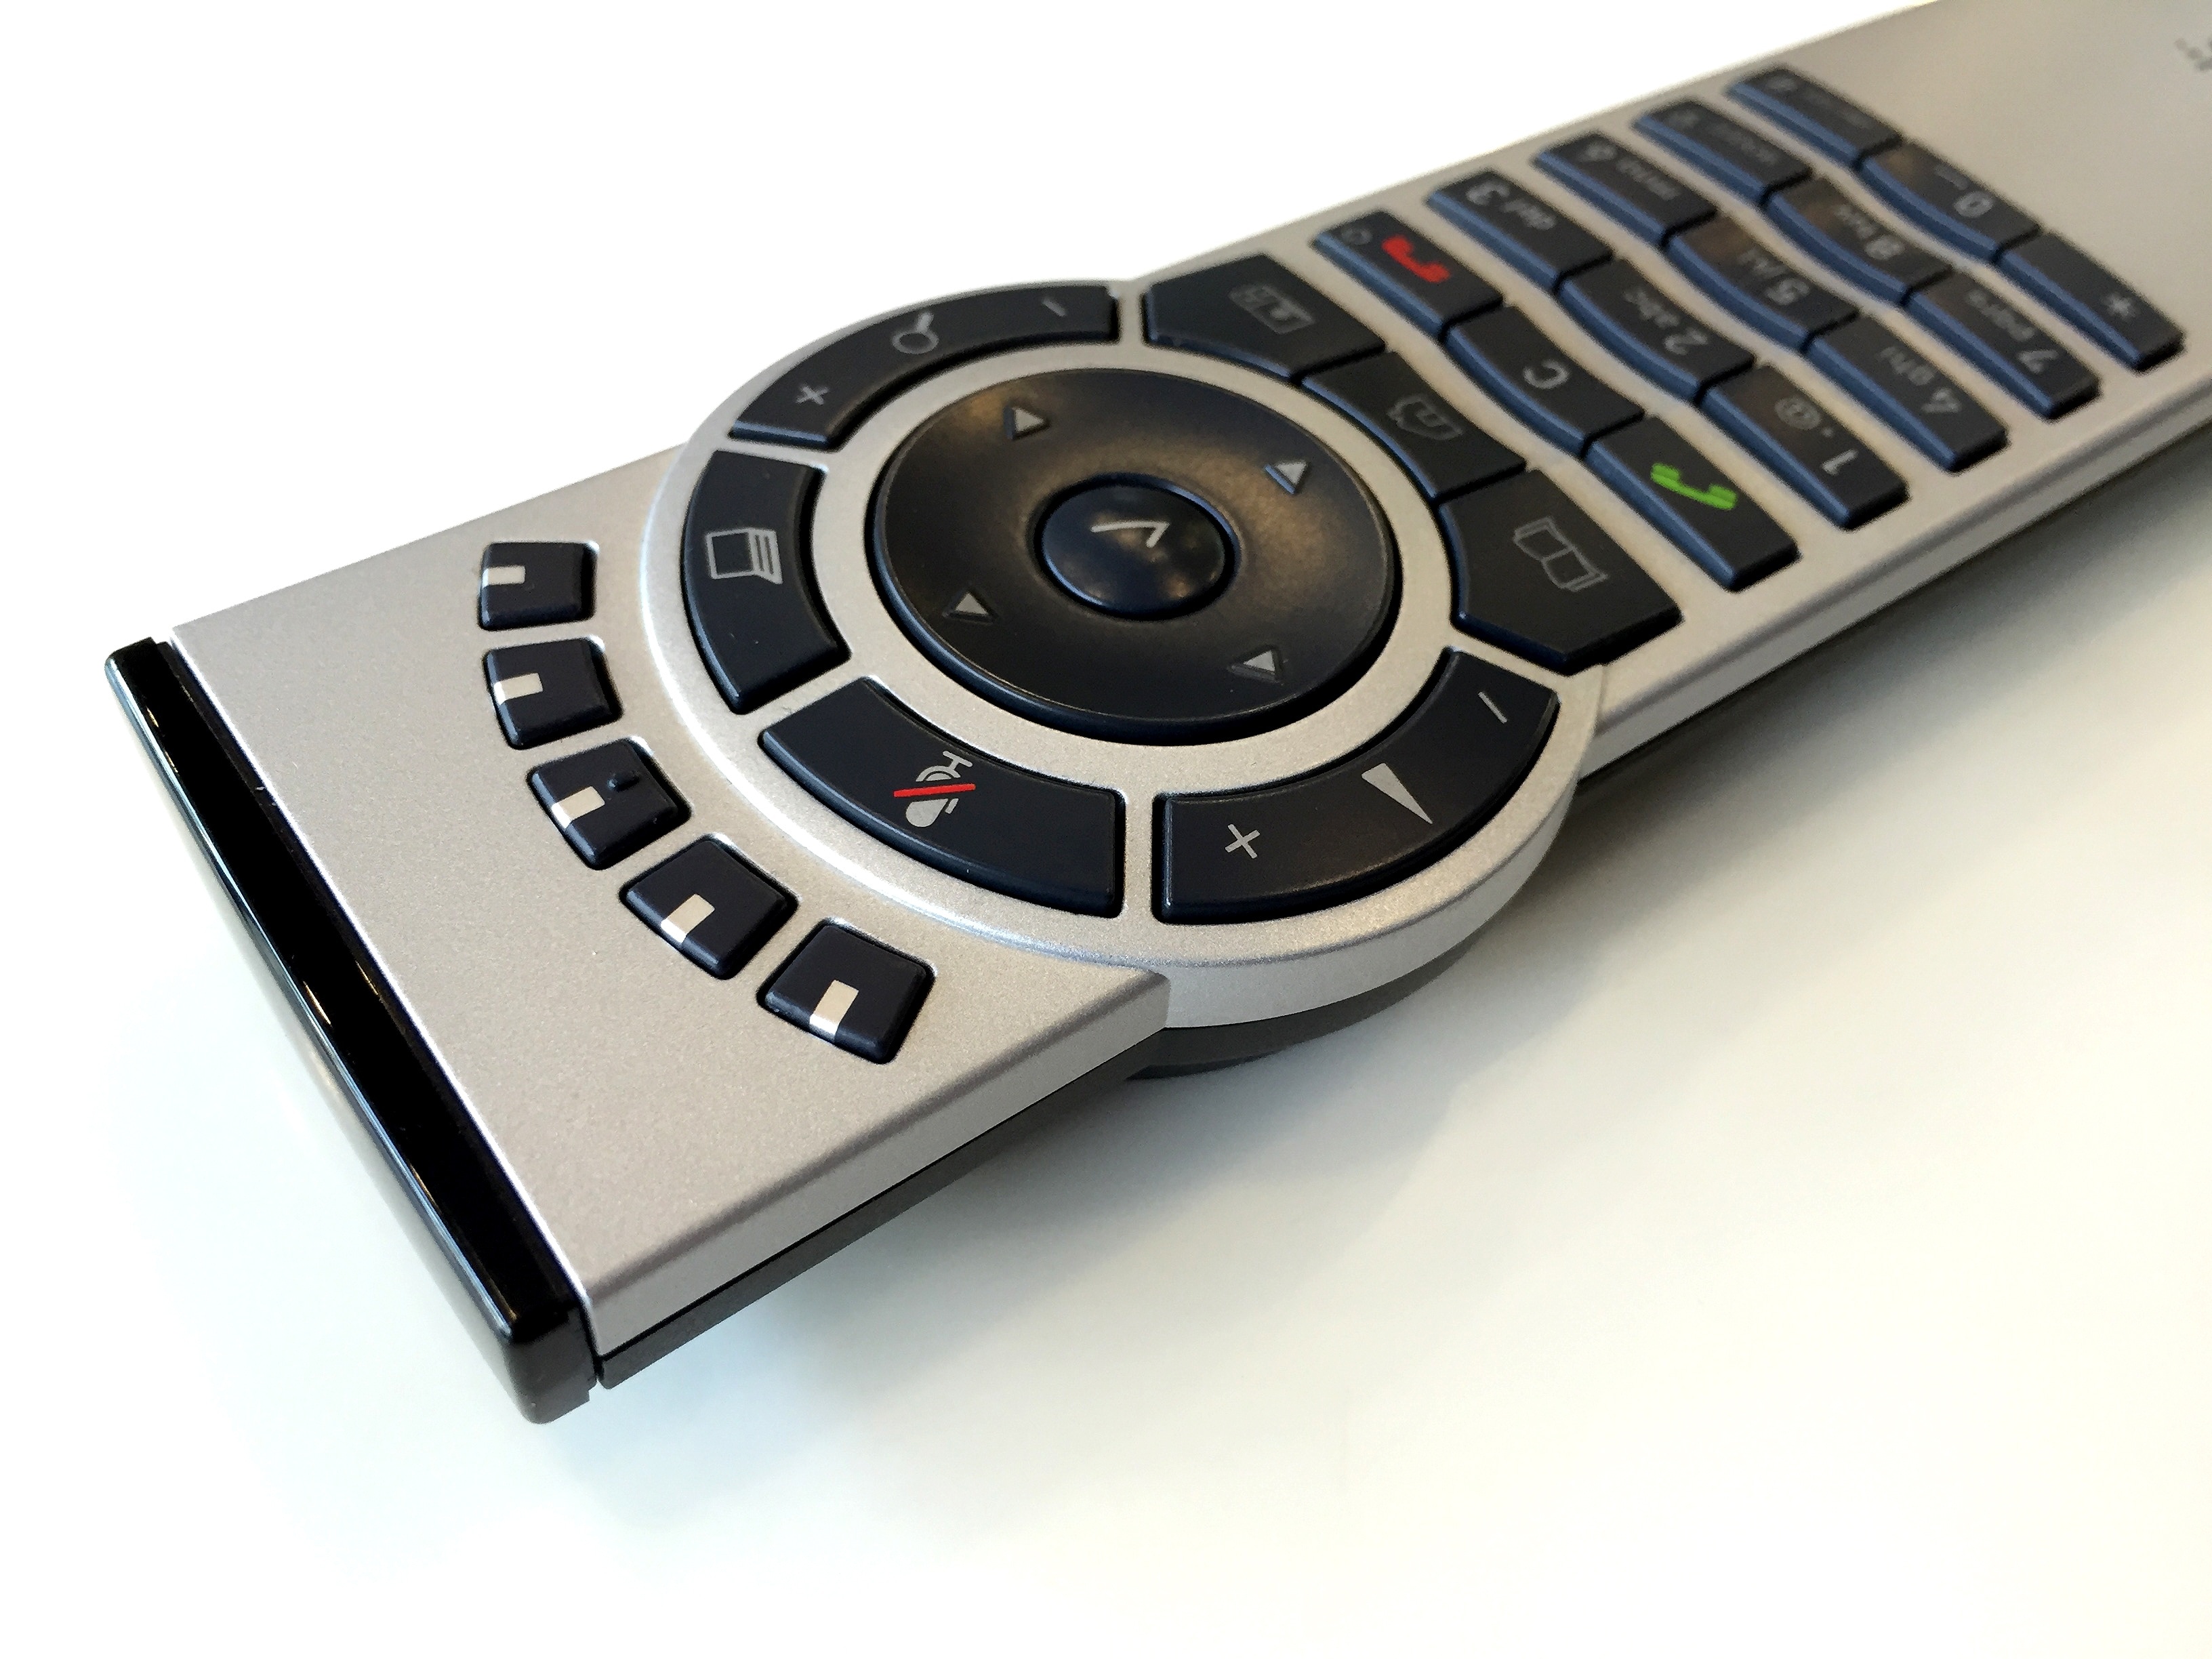 gray remote control